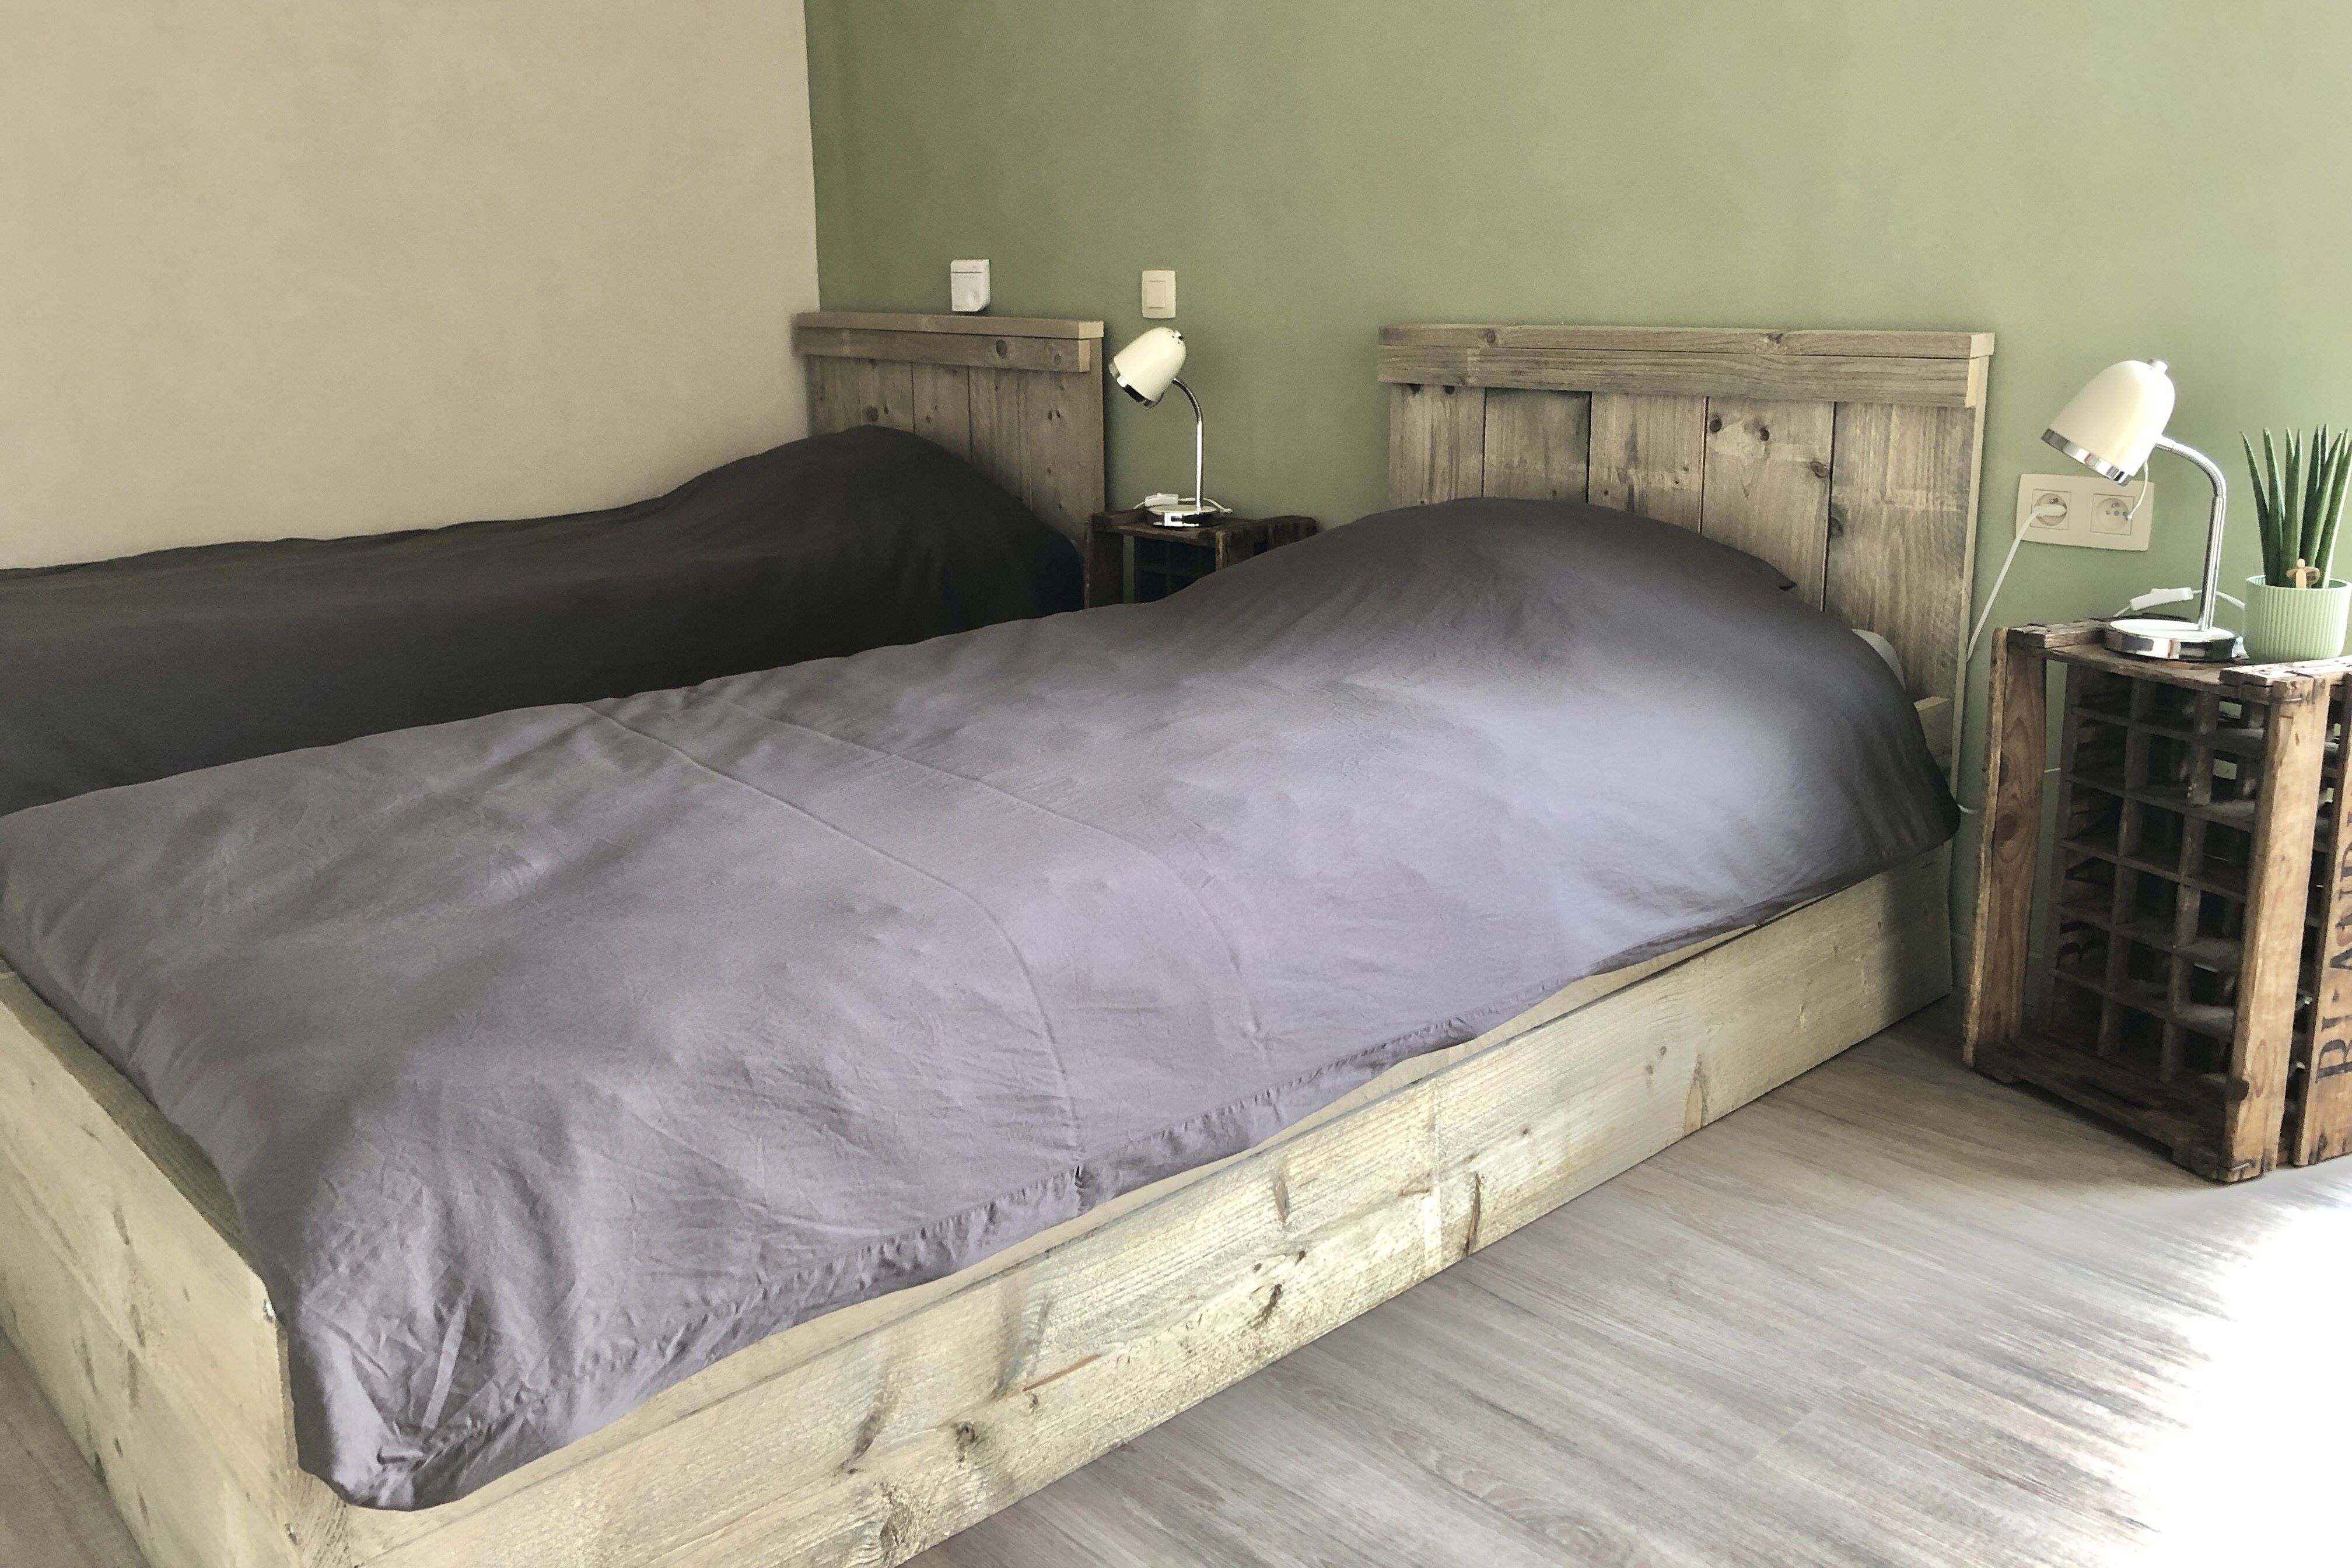 Slaapkamer vakantiewoning: keuze of dubbele bedden op vraag